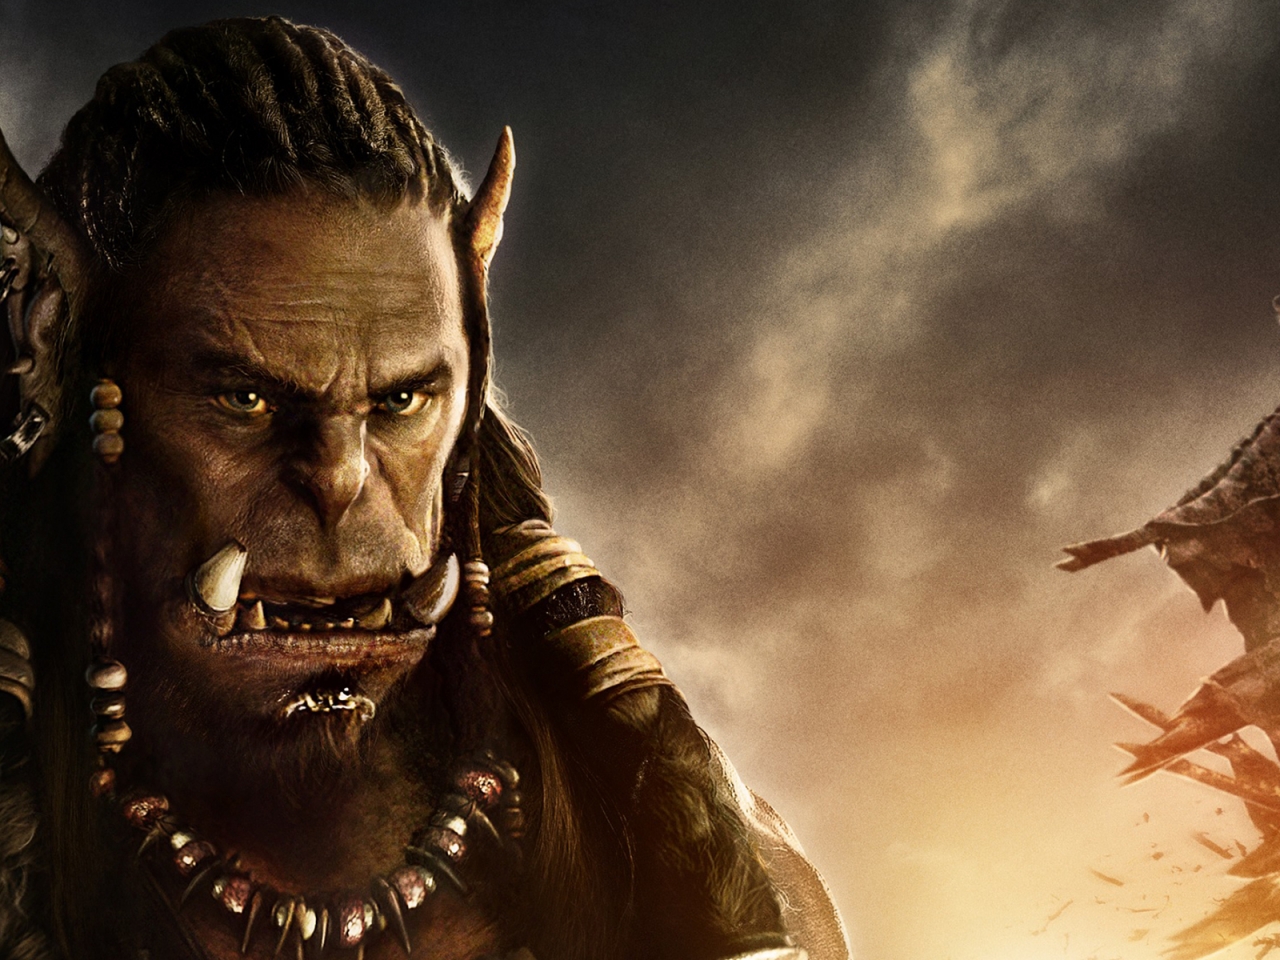 Warcraft Movie 2016 Durotan for 1280 x 960 resolution